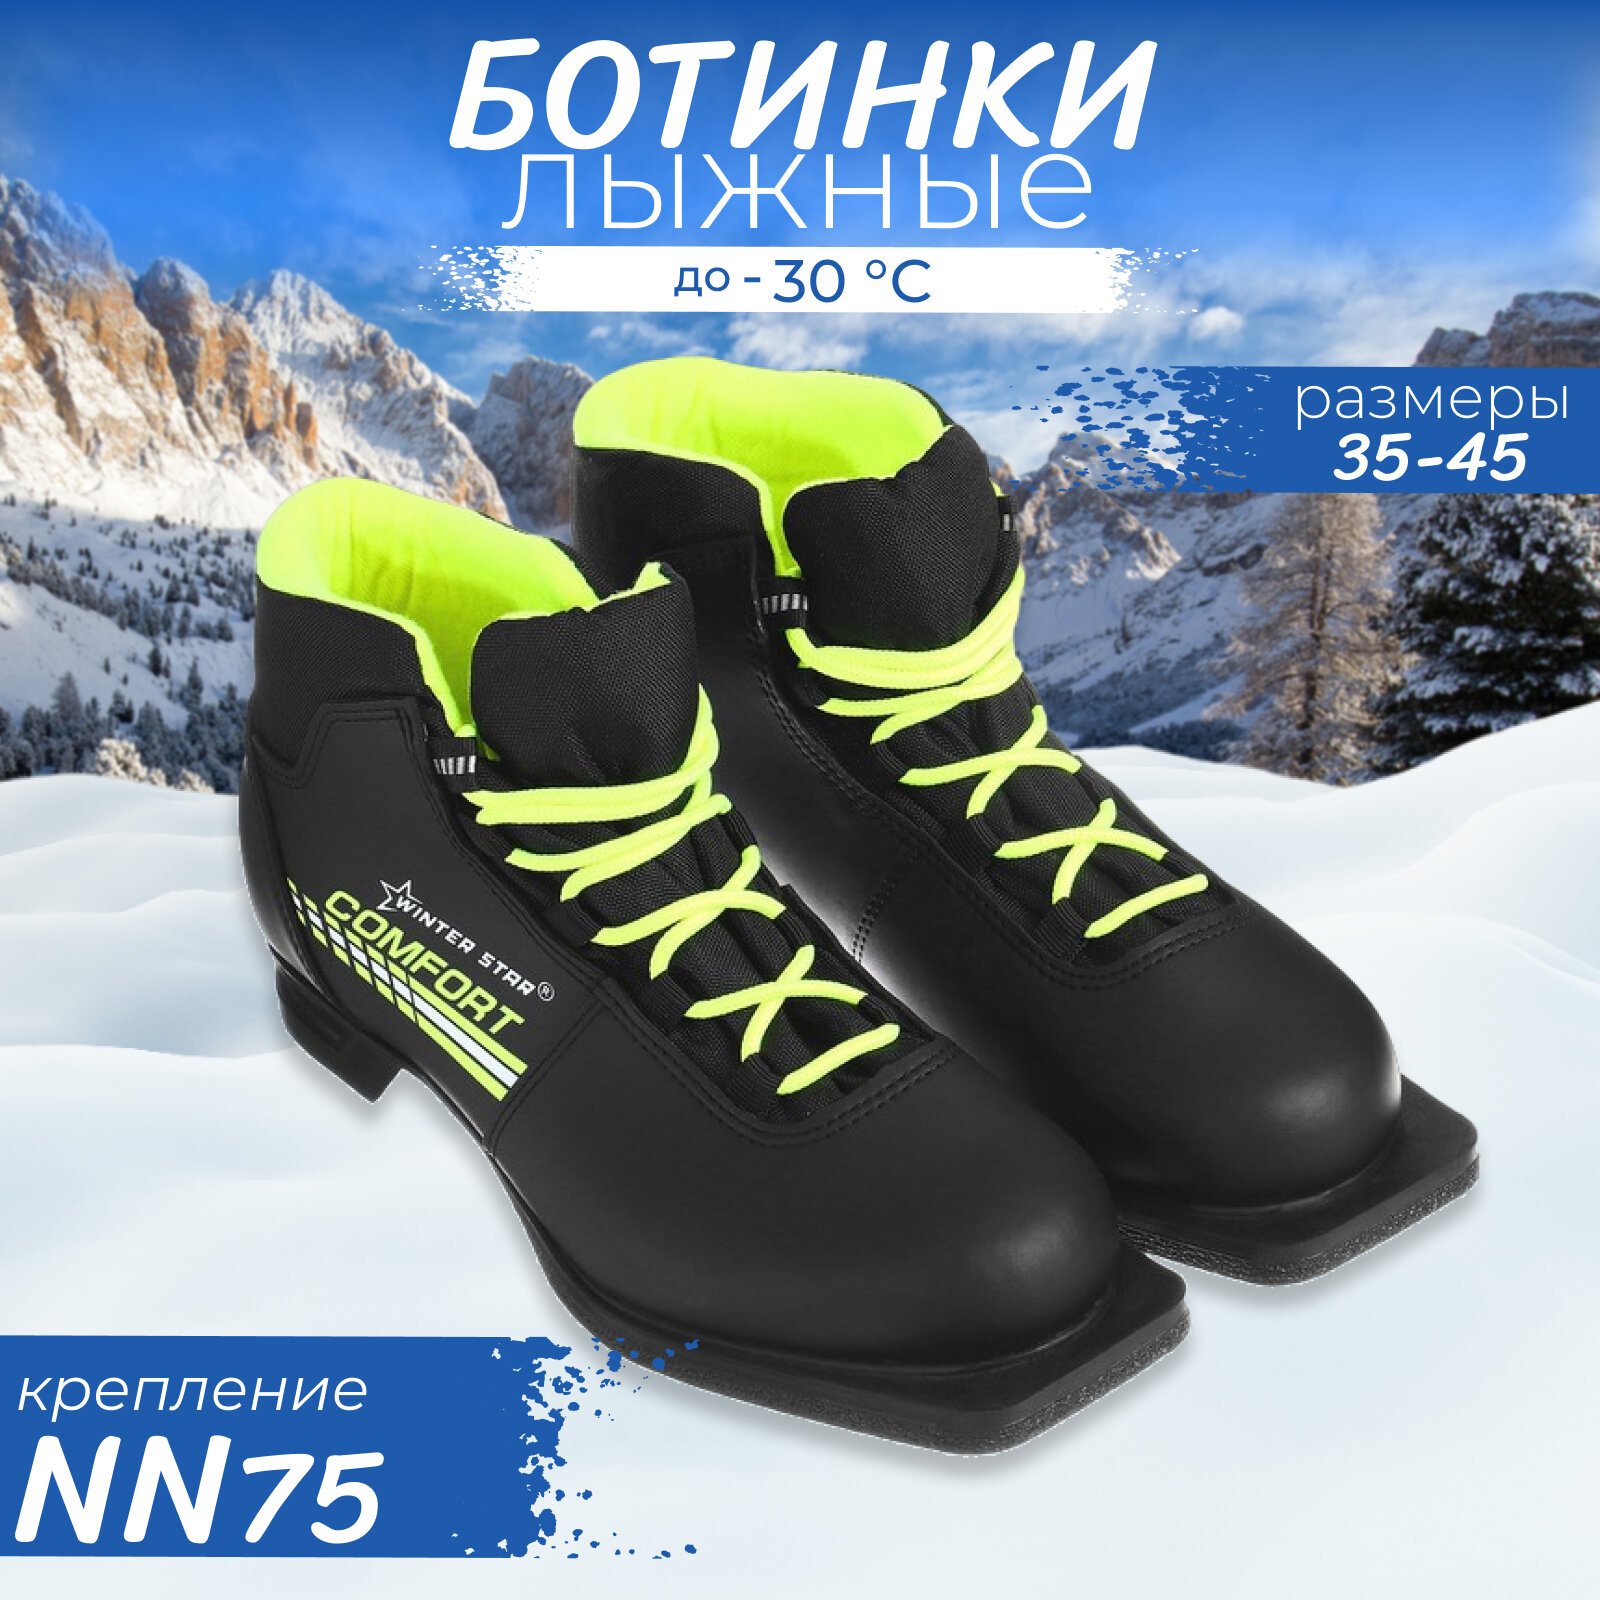 Ботинки лыжные Winter Star comfort, NN75, размер 40, цвет чёрный, салатовый